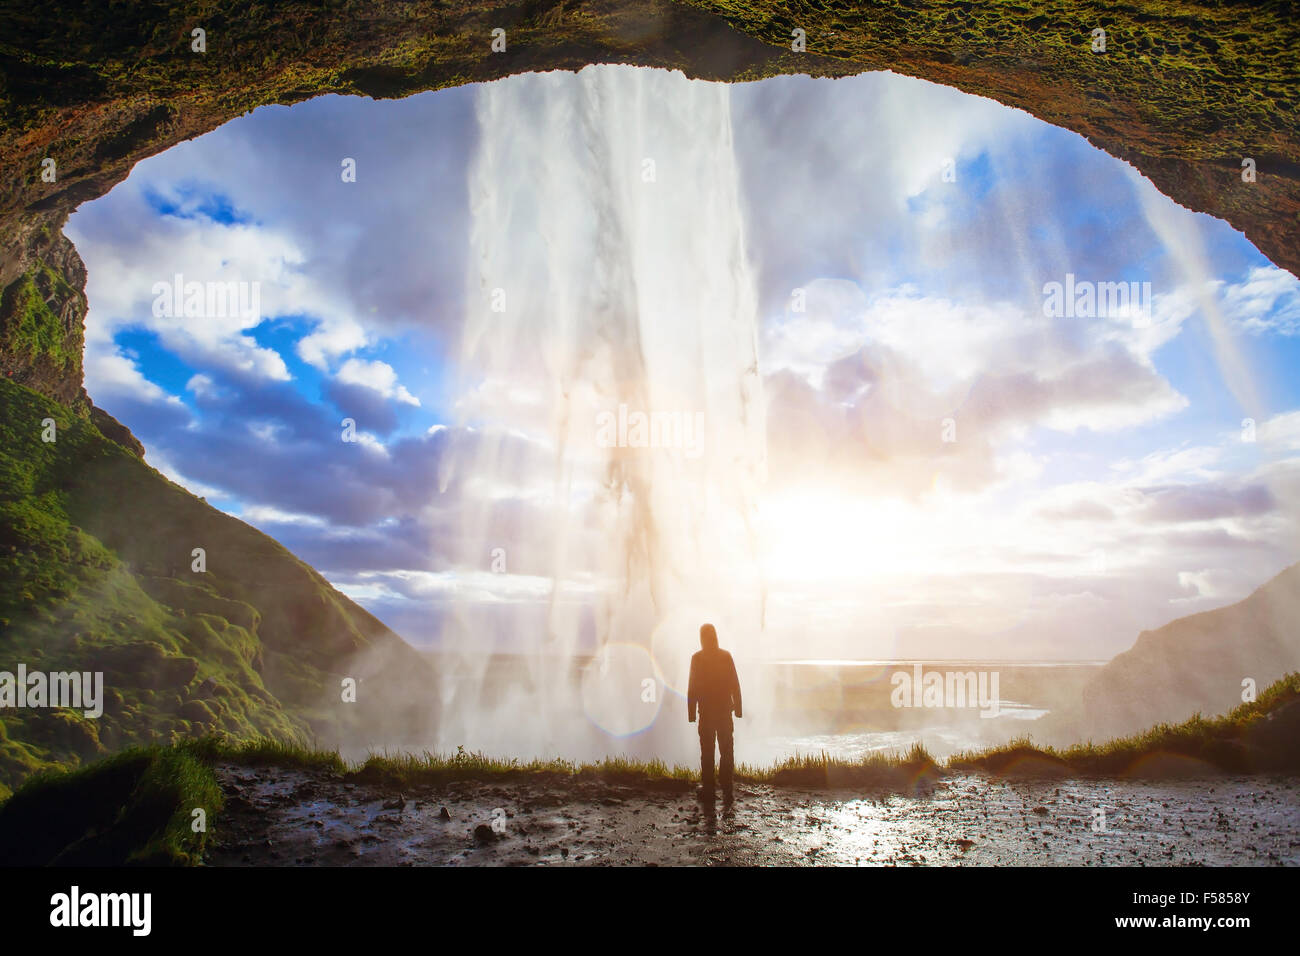 Incredibile cascata in Islanda, silhouette dell'uomo godendo di una vista fantastica della natura Foto Stock